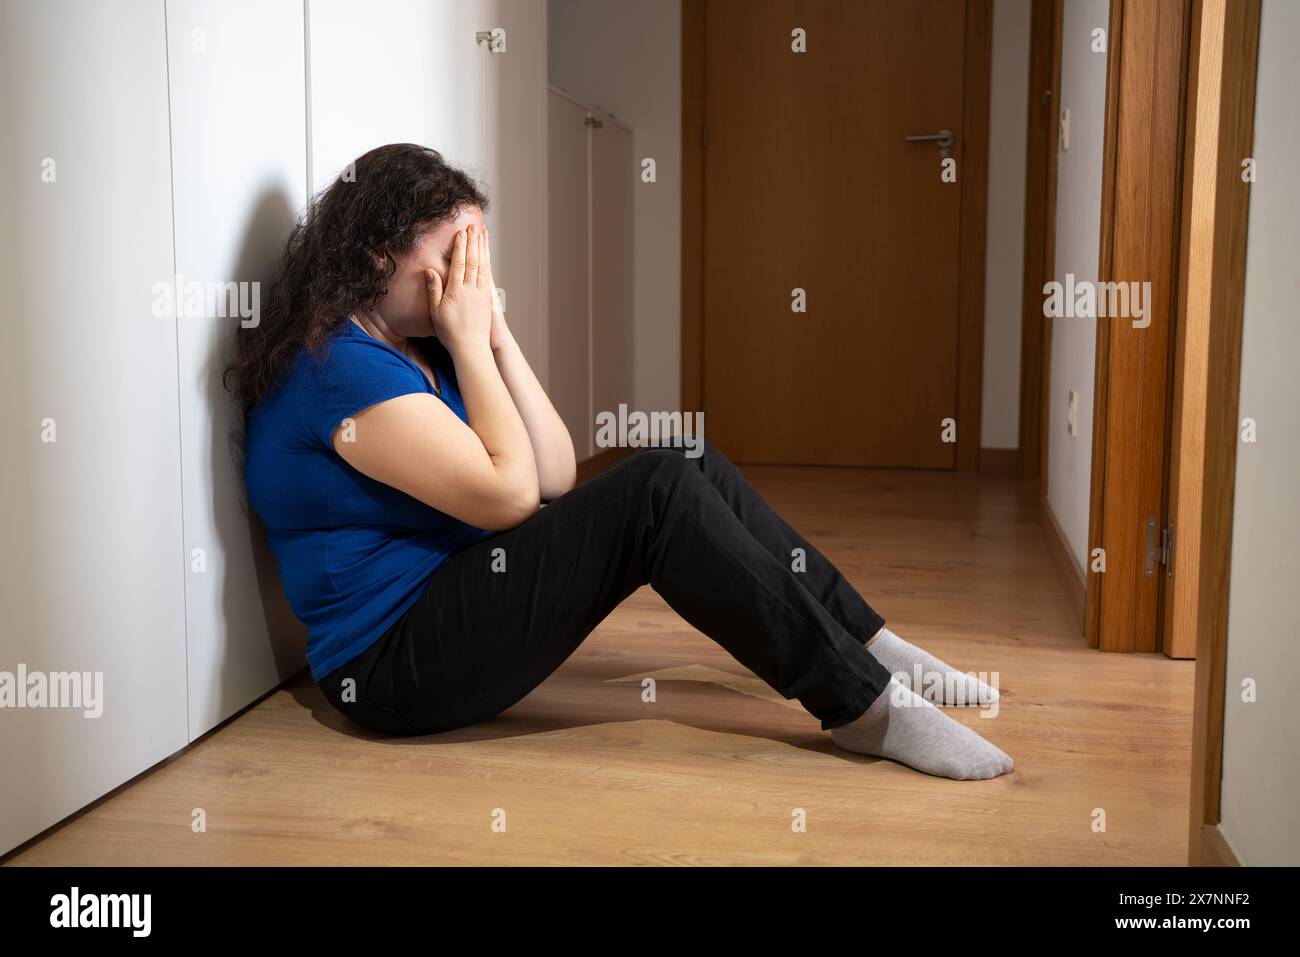 Verärgerte Problemfrau mit Kopf in den Händen sitzend auf dem Boden Konzept für Mobbing, Depressionen Stress oder Frustration am Arbeitsplatz Stockfoto